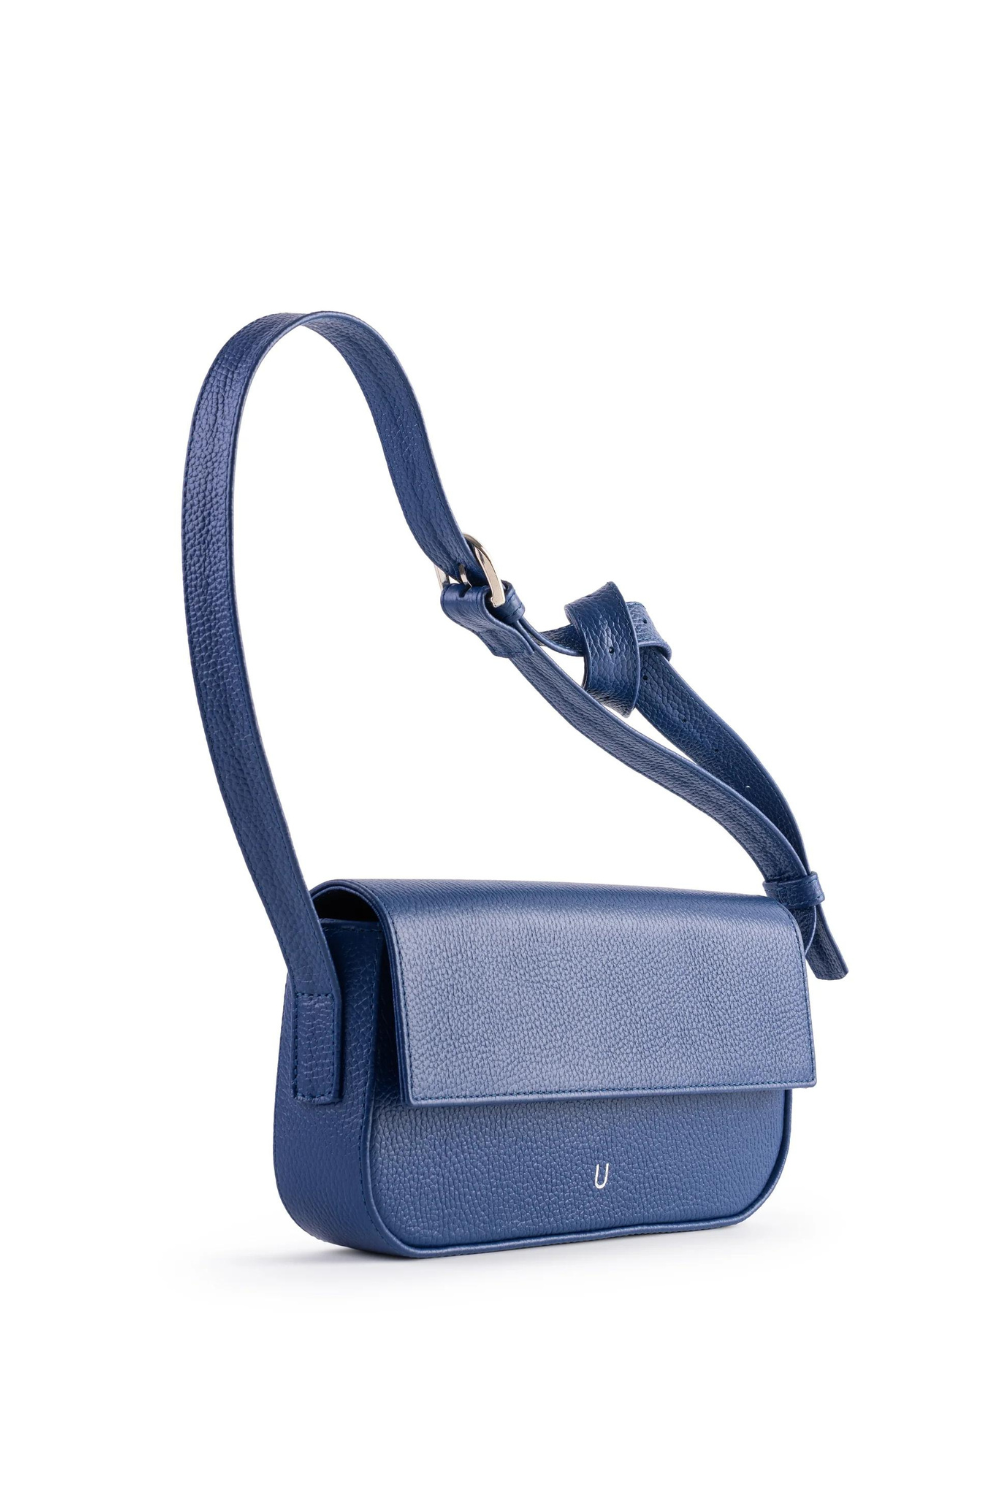 Dámská kabelka BAGUETTE z pravé kůže, modrá (Uyava) BG-00522